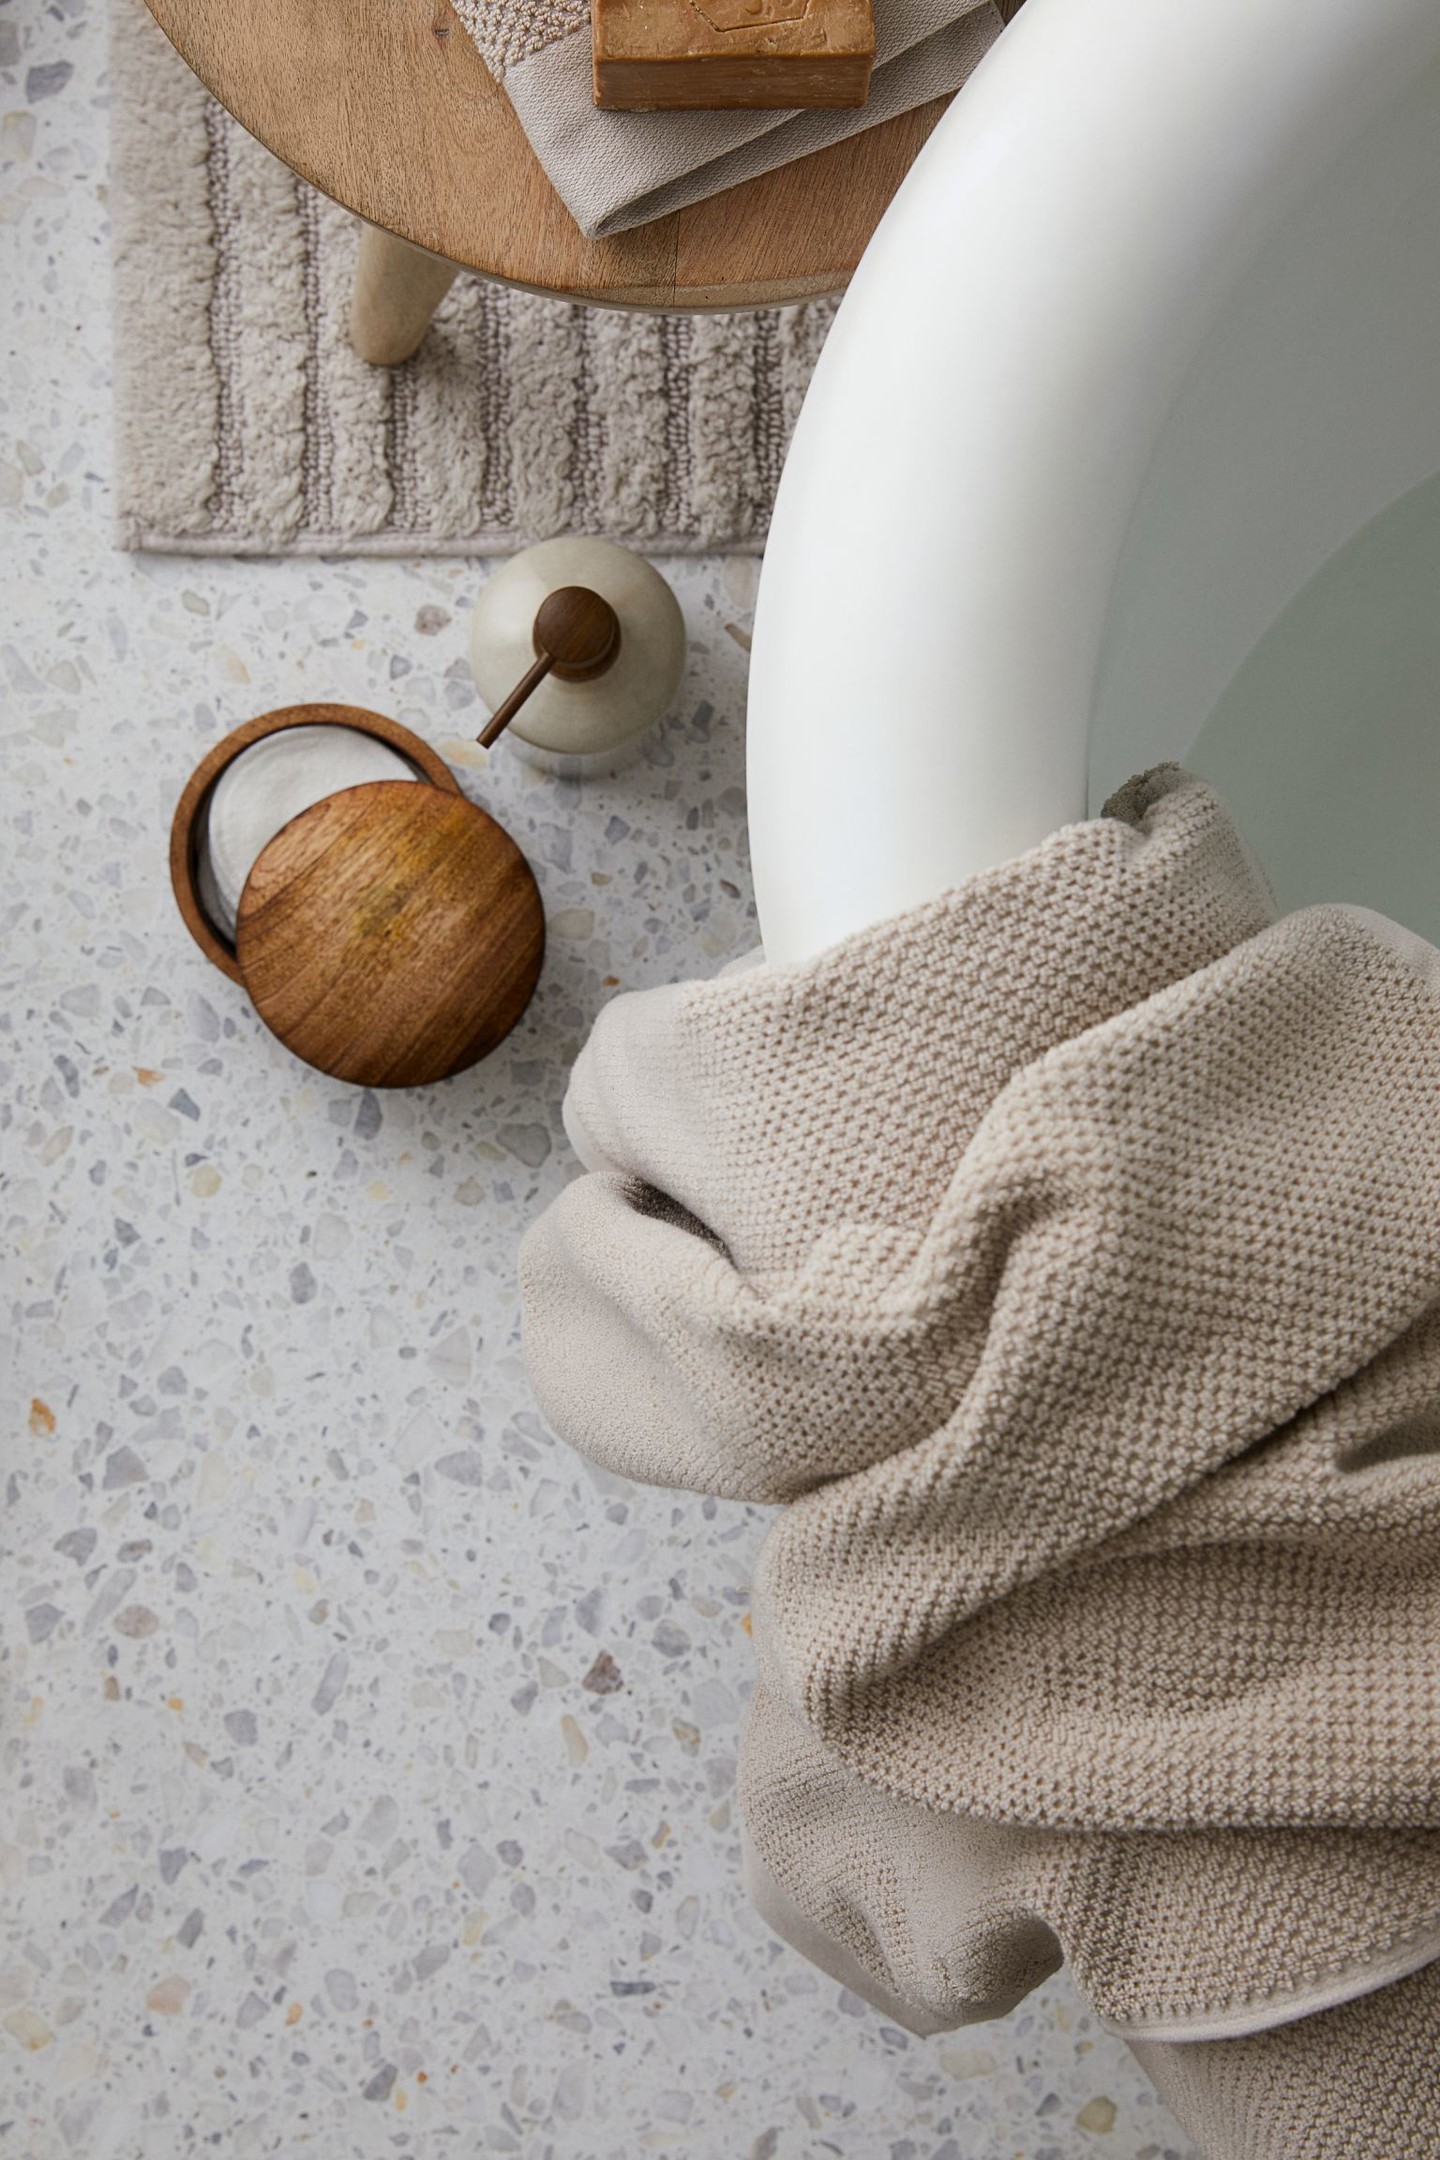 Để có được trải nghiệm spa thực sự thú vị tại phòng tắm của mình, đừng quên chất liệu dệt may cho các món đồ xung quanh bạn.